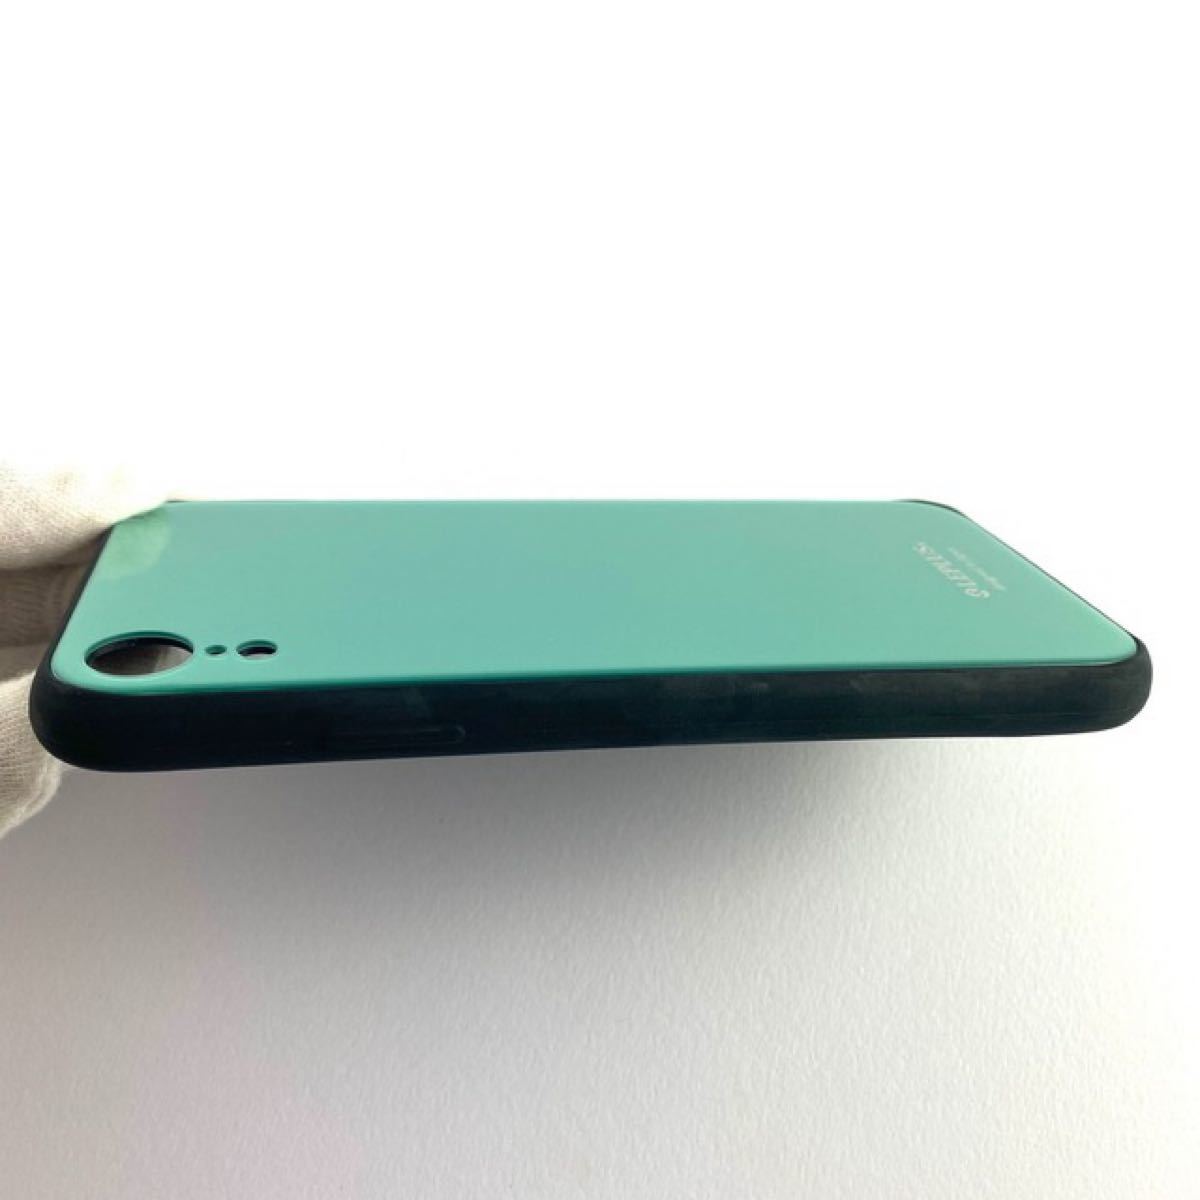 新品 iPhone XR 背面ガラスシェルケース「SHELL GLASS」 グリーン